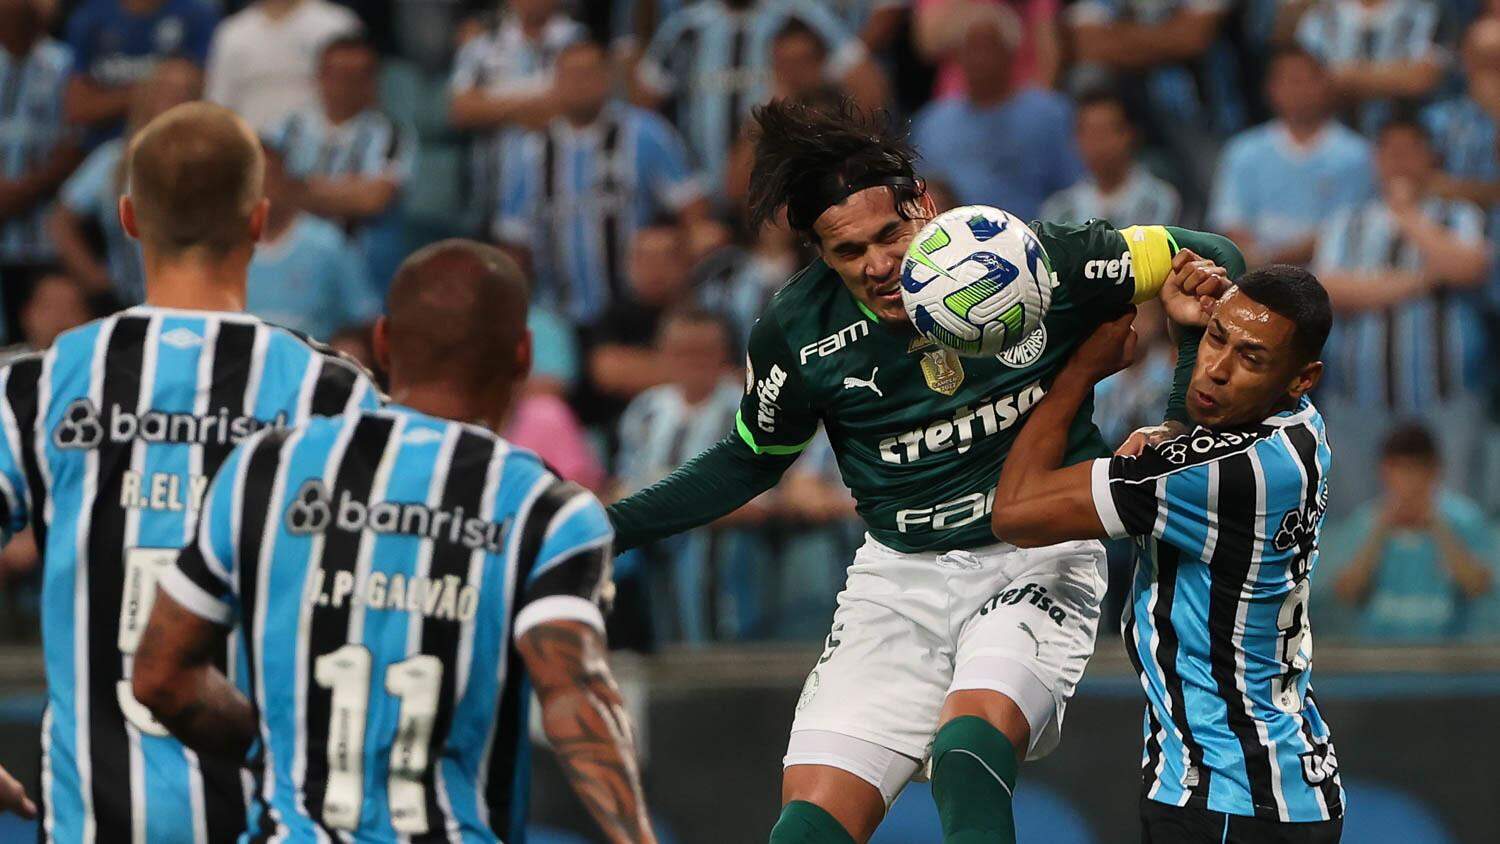 Copa Libertadores: Assista ao vivo e de graça ao jogo Palmeiras x